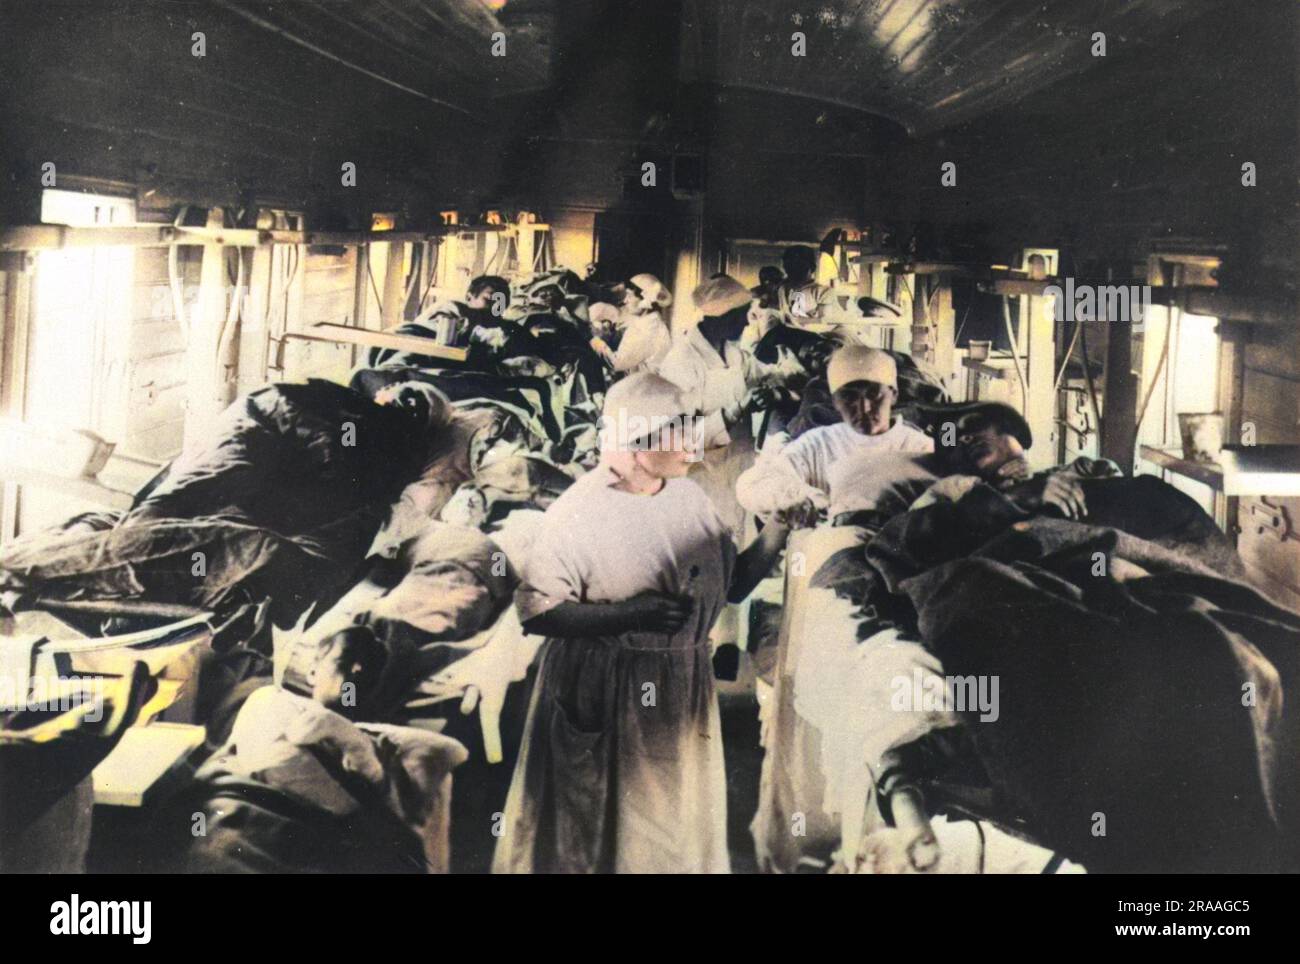 Un russo treno essendo utilizzato come un ospedale temporaneo specializzato nel trattamento di pazienti affetti da febbre tifoide. Data: 1920 Foto Stock